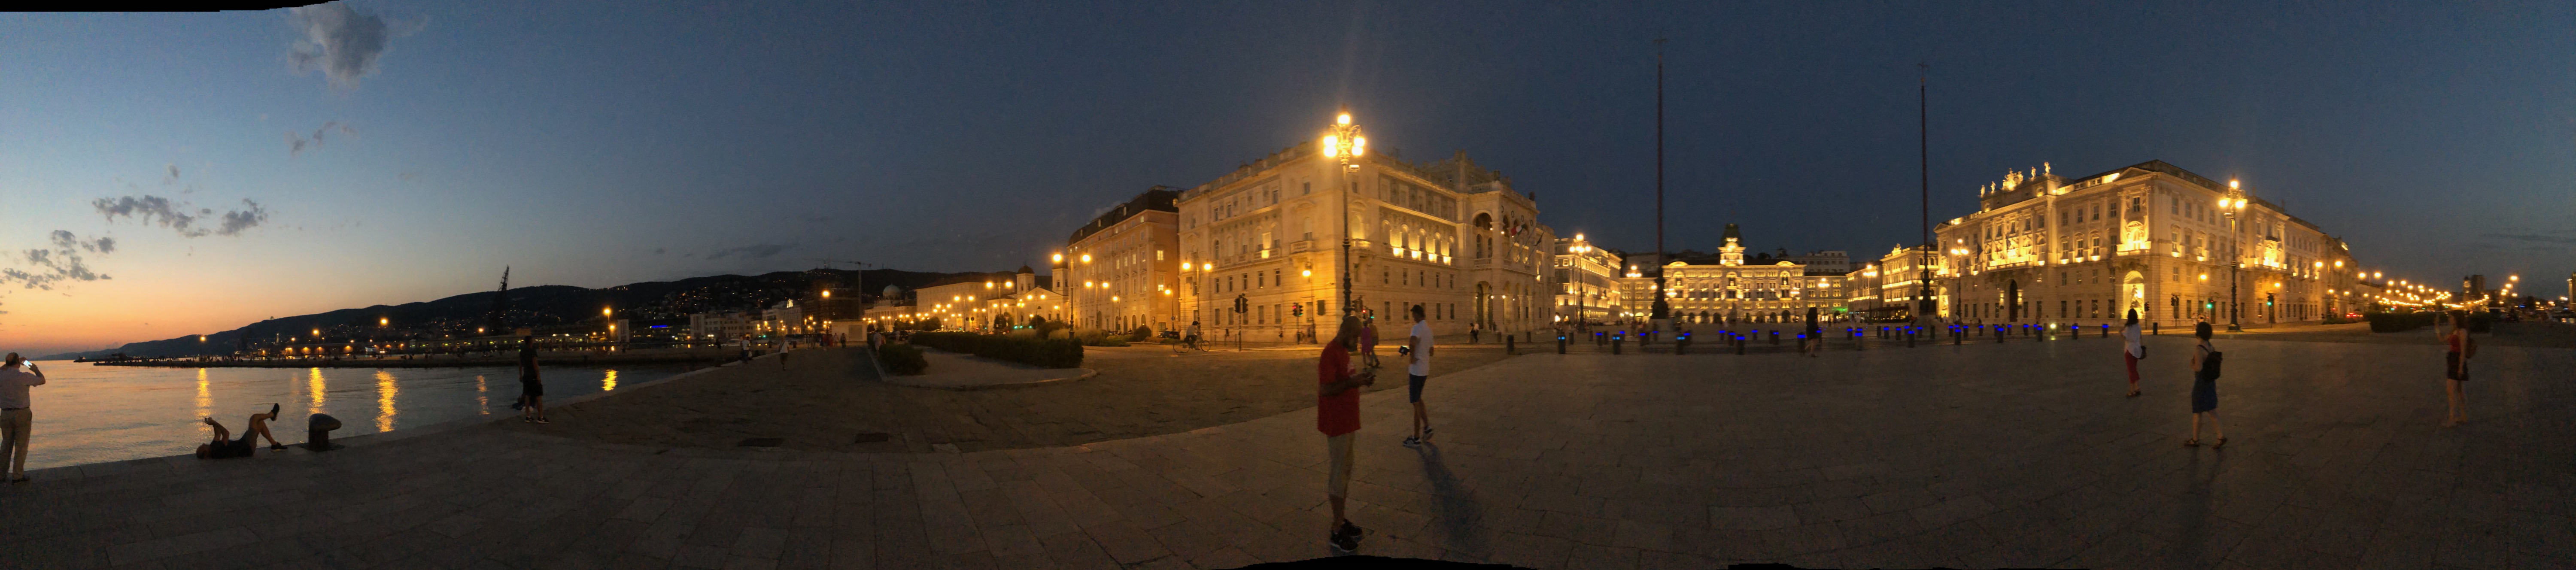 Trieste's unique Piazza Unità by night